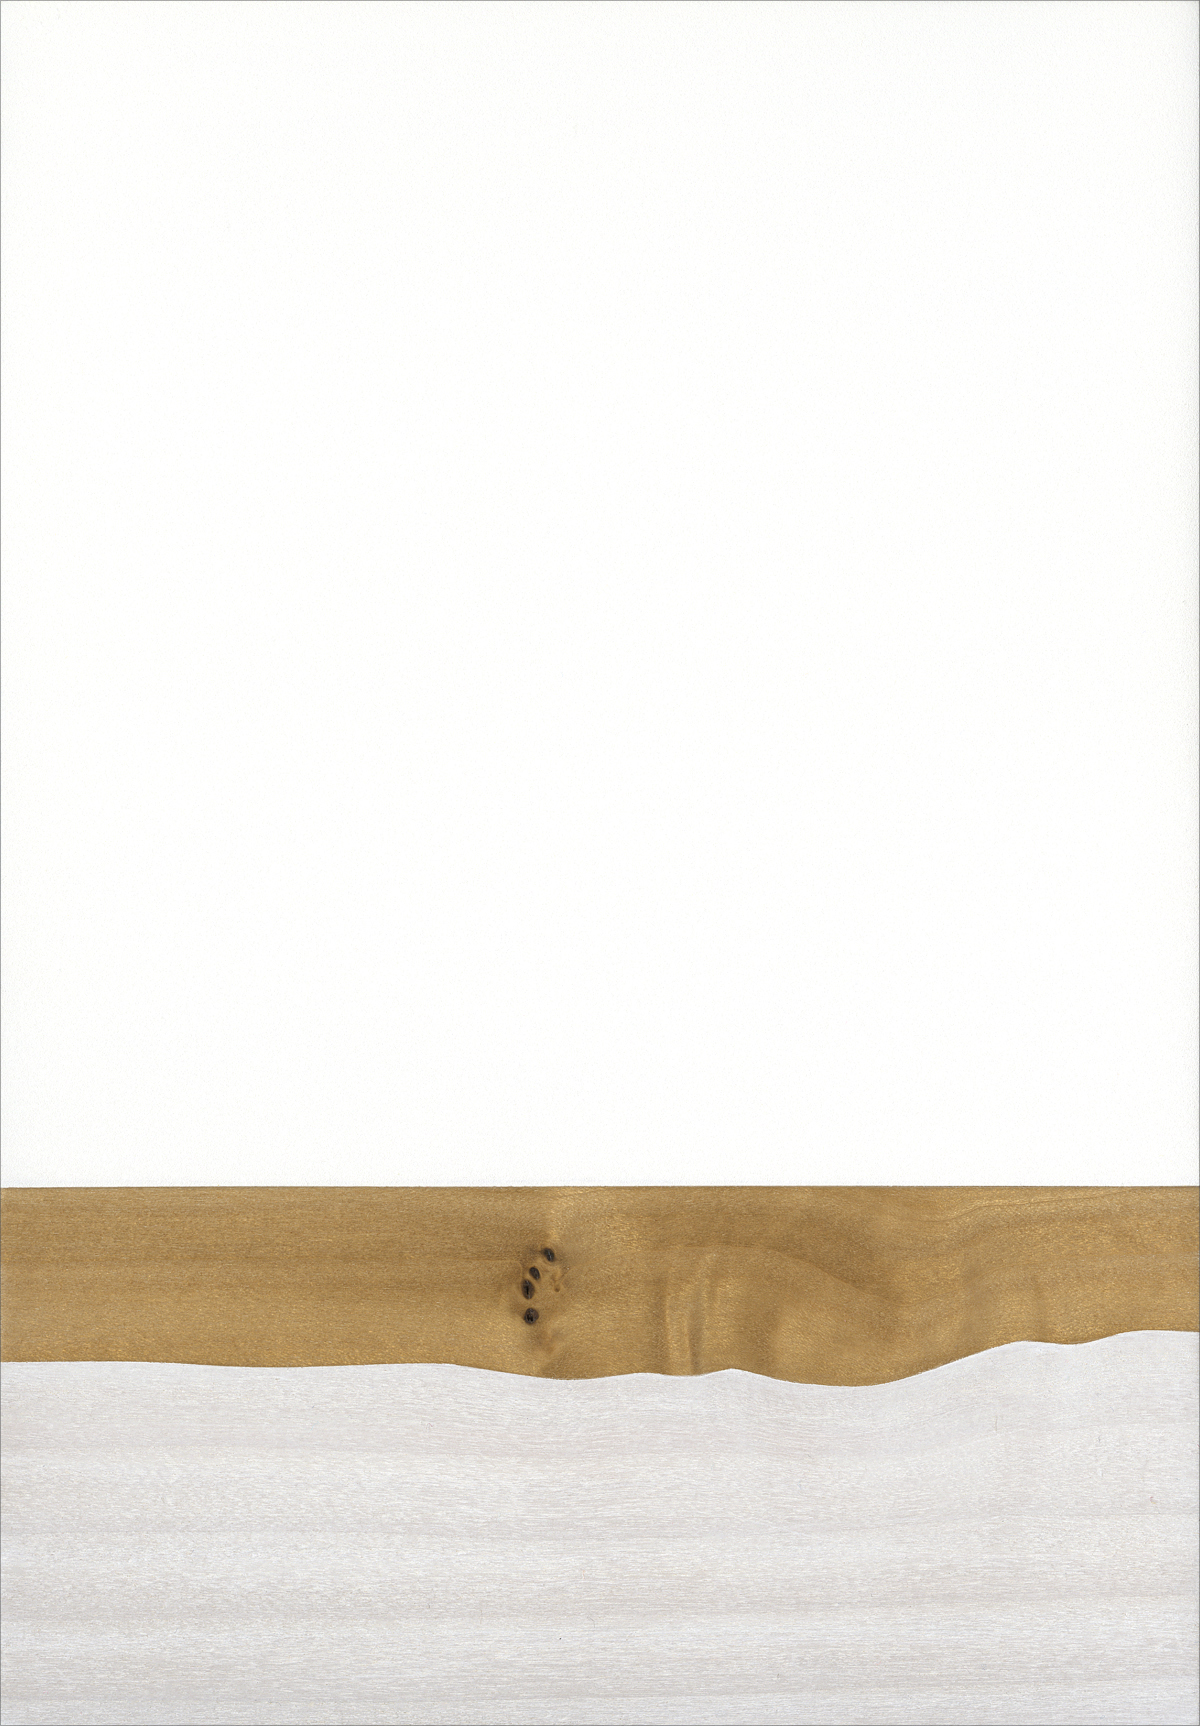   Shroud  Gesso/Lacquer/Wood 5 ½” x 8” x 1” 2017 